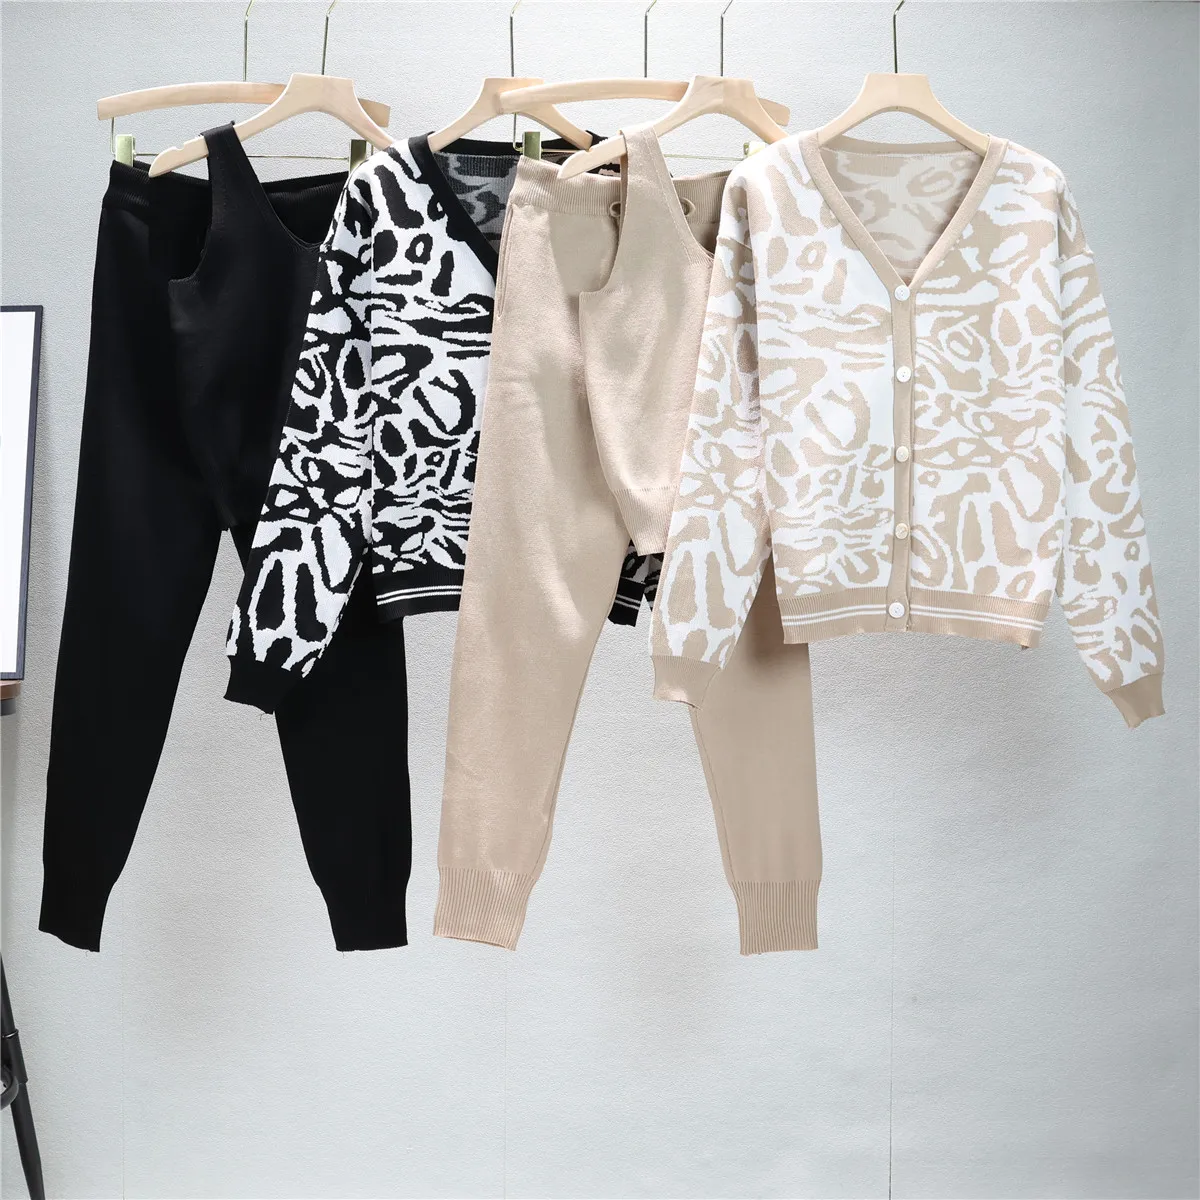 

Spring Autumn 3 Piece Sets Women Cardigan Tracksuits Vintage Women Open Cardigans Coat + Short Tank Top + Harem Pants Suits